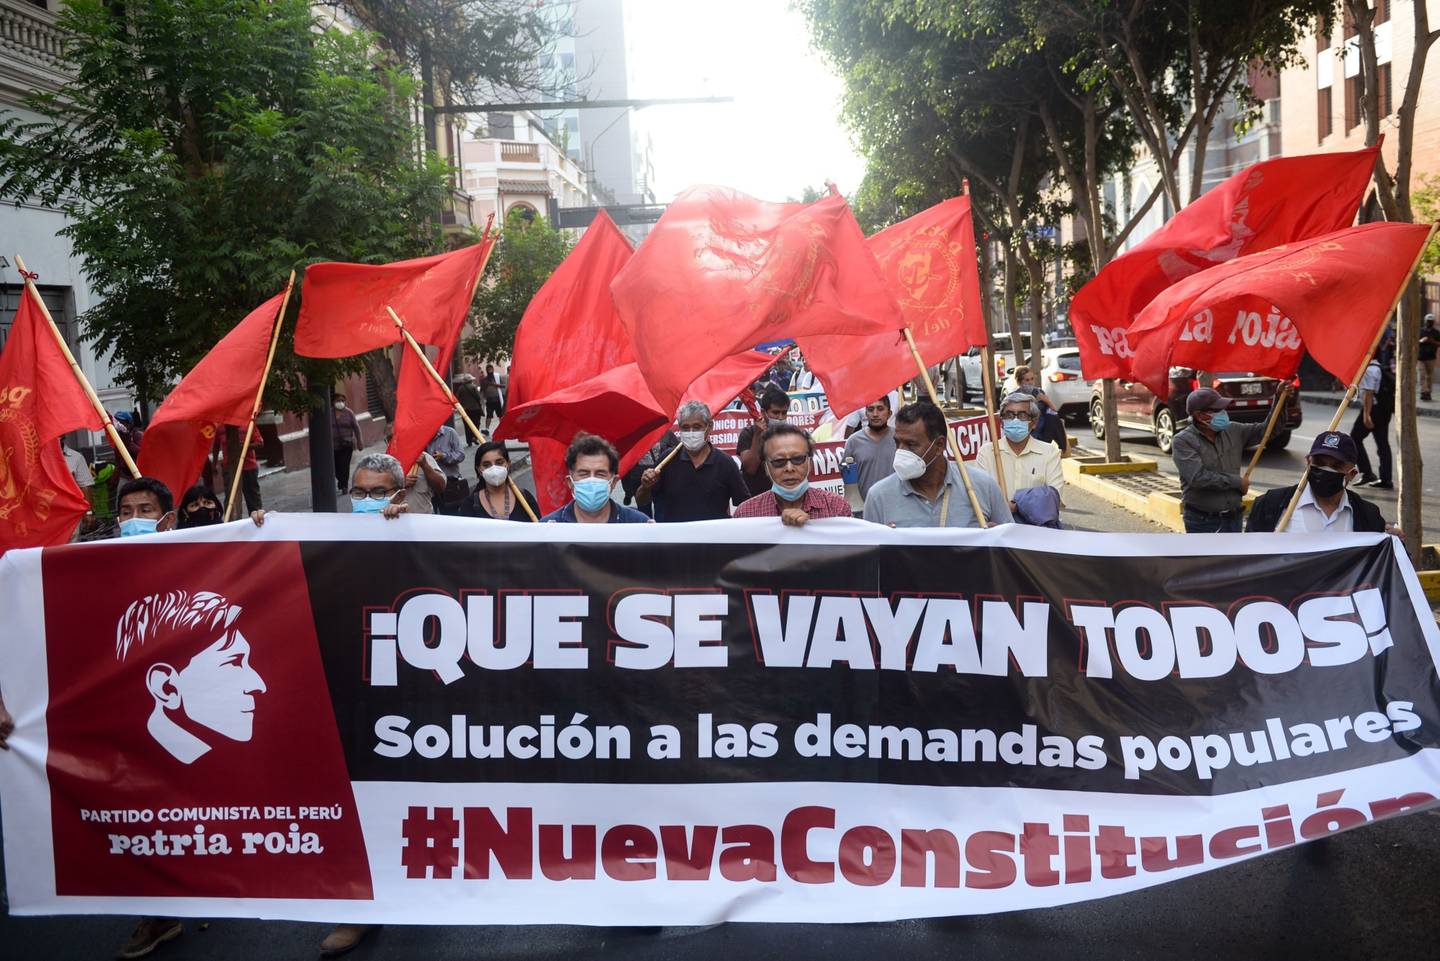 Manifestantes durante una protesta en Lima, Perú, el jueves 7 de abril de 2022. Se prevé que Perú suba los tipos de interés el jueves para frenar la creciente inflación que ha provocado protestas masivas, disturbios y un estado de emergencia en los últimos días.dfd